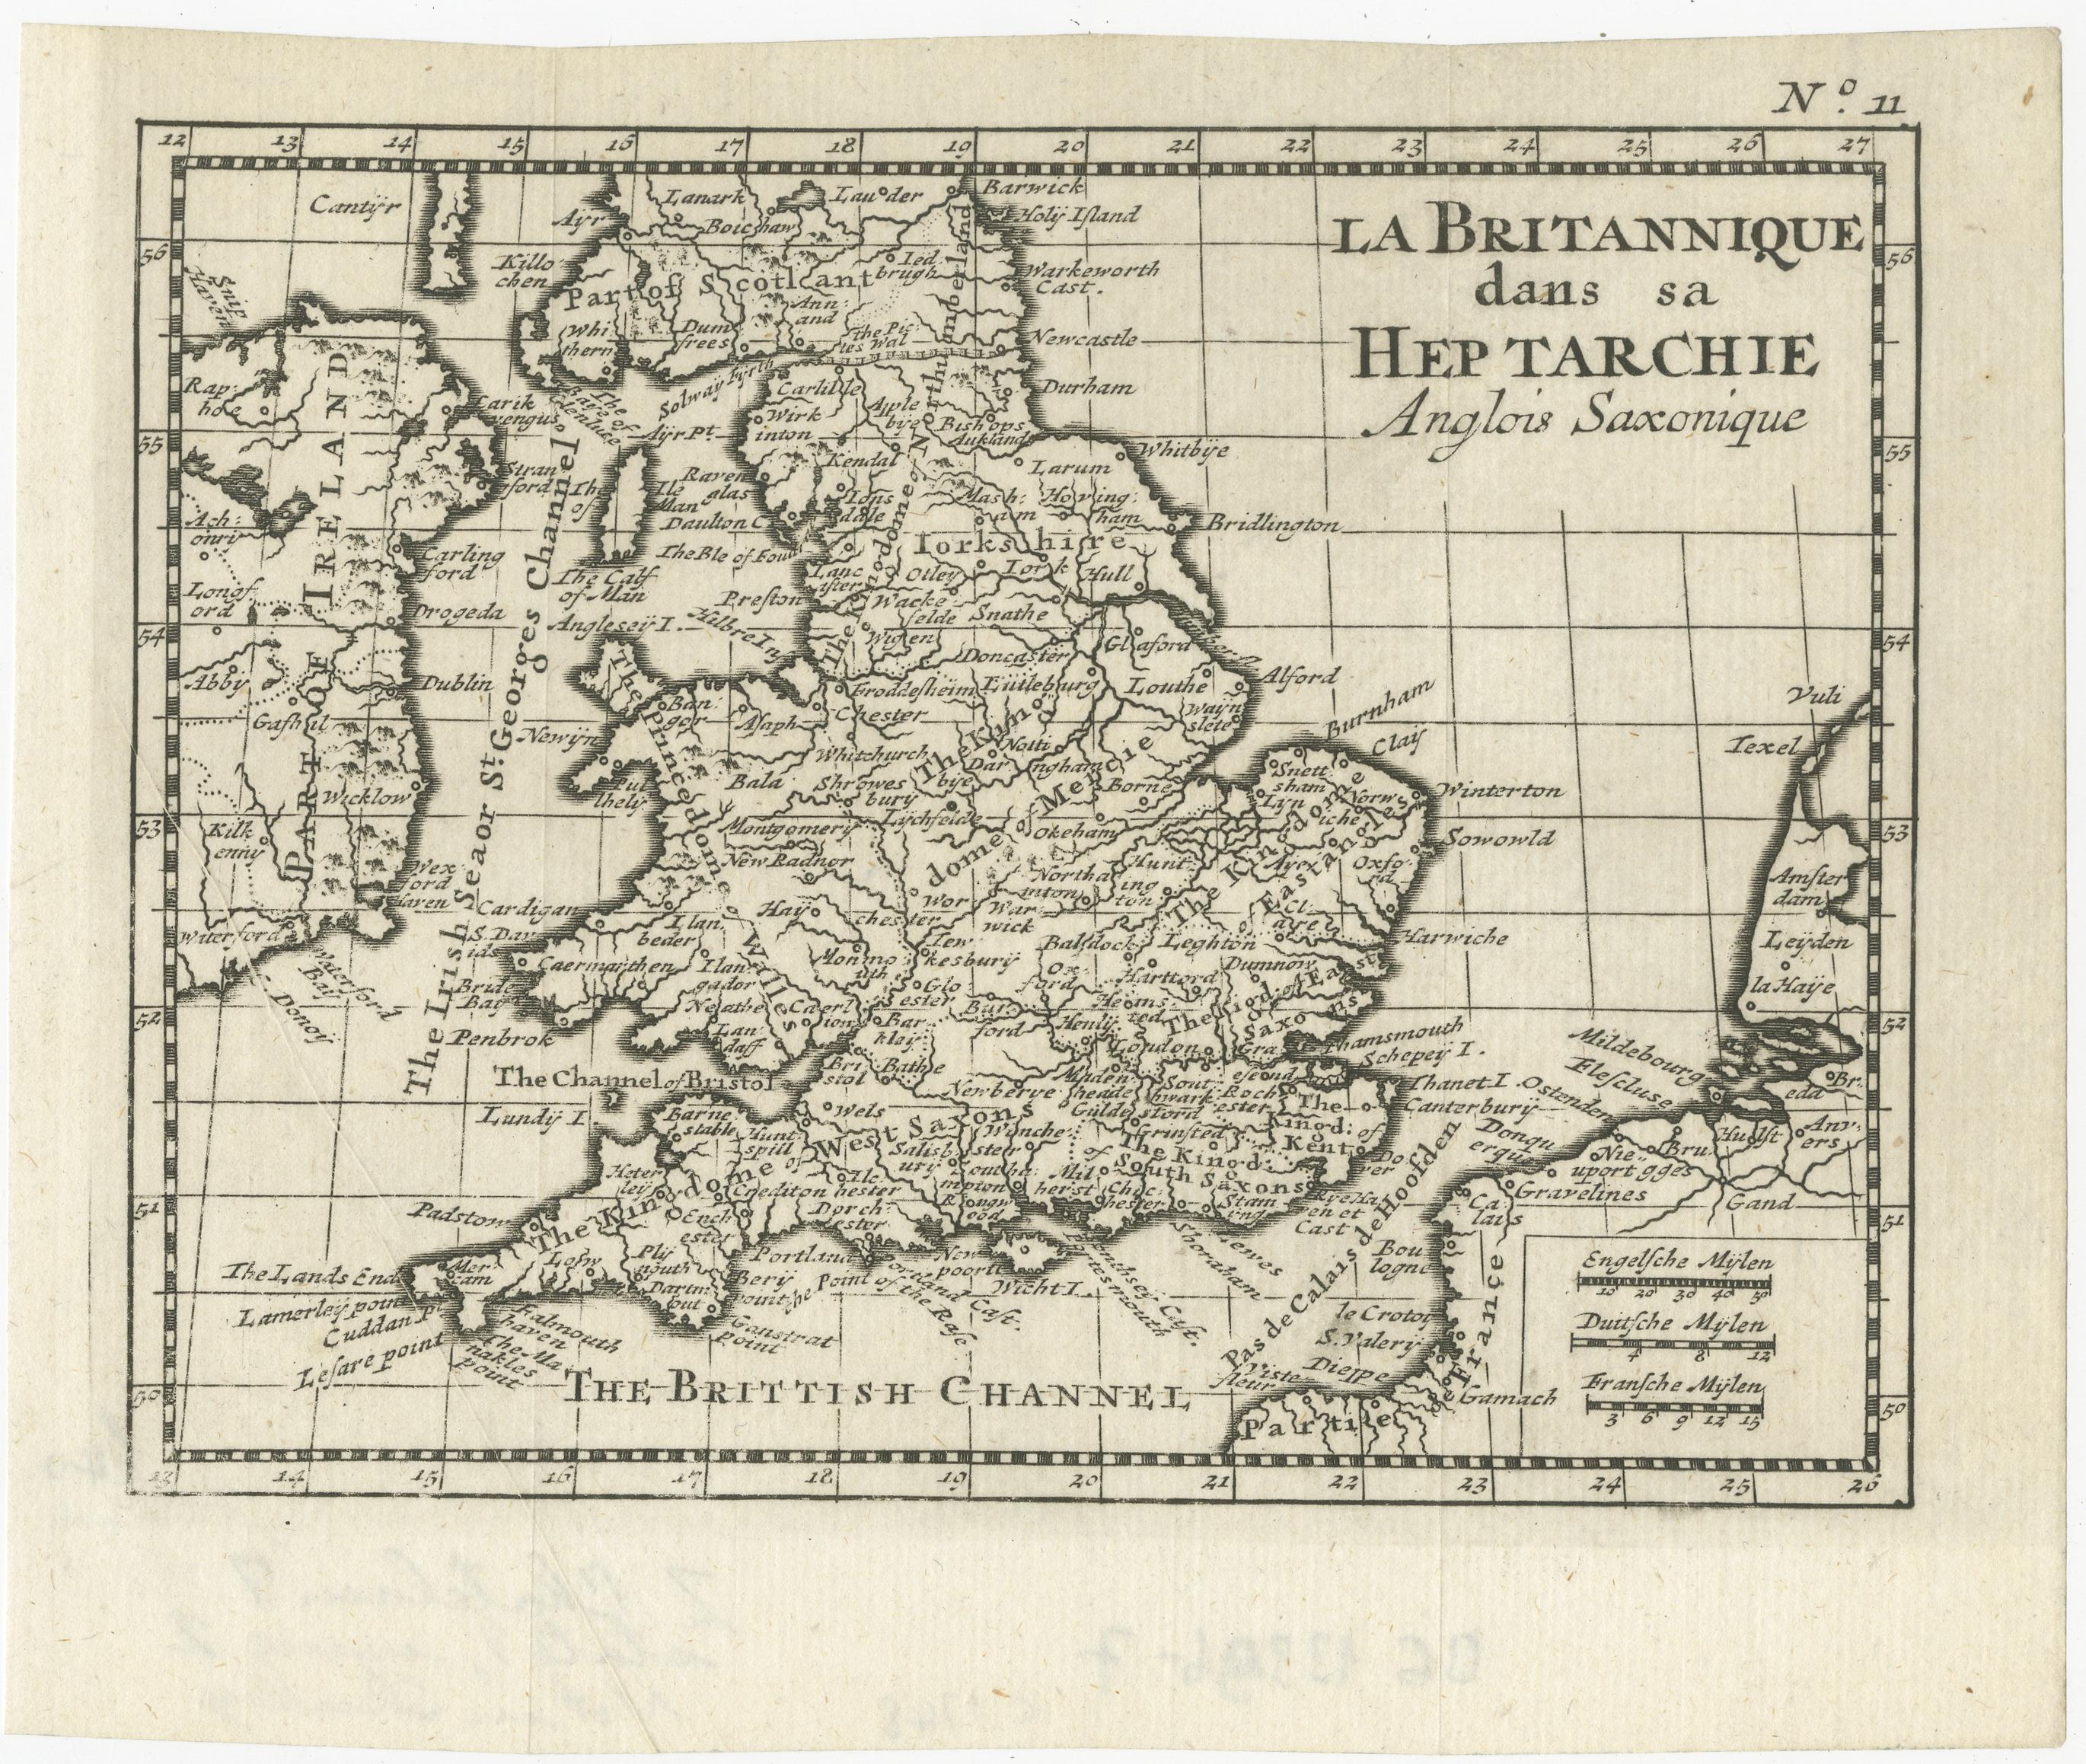 Antike Karte mit dem Titel 'La Britannique dans sa Heptarchie Anglois Saxonique'. Diese kleine Karte zeigt England und Wales zur Zeit der Heptarchie, ein Begriff, der sich auf die sieben Königreiche bezieht, die nach dem Abzug der Römer von 500-850